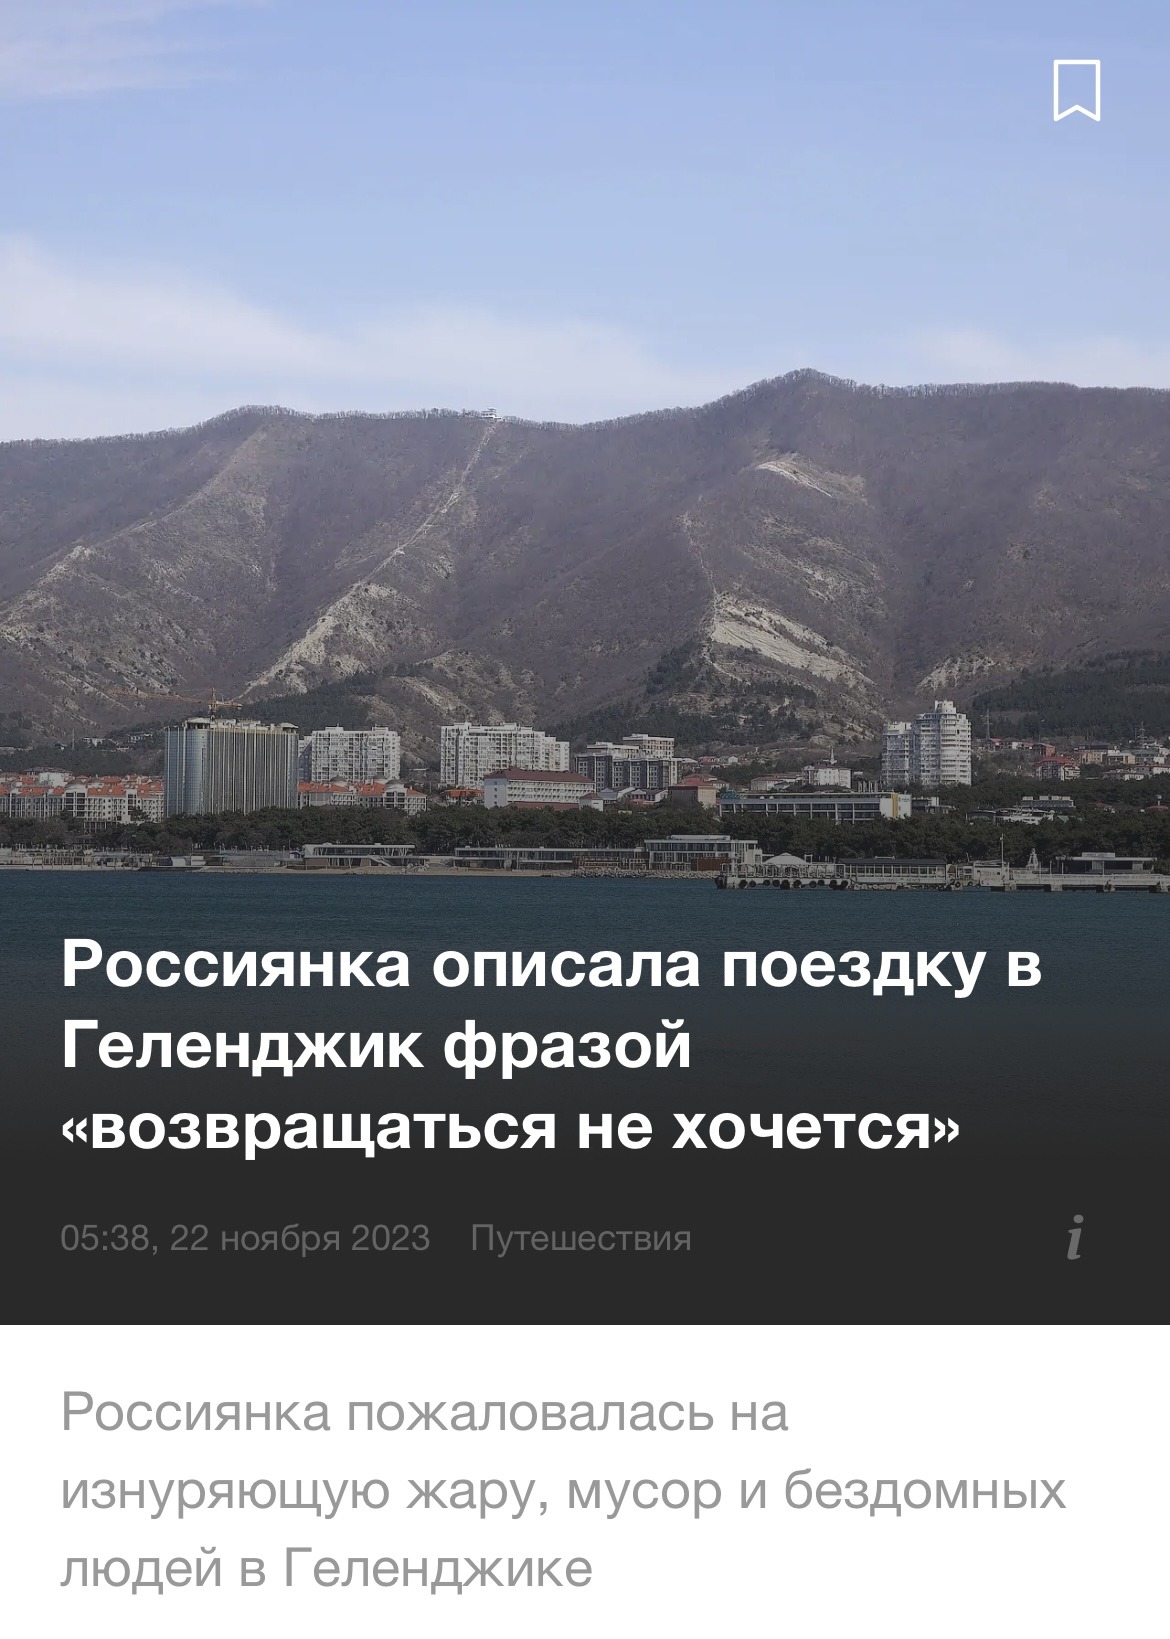 Гниль, вода по графику и куча бездомных: россиянка пожаловалась на отдых на популярном курорте РФ